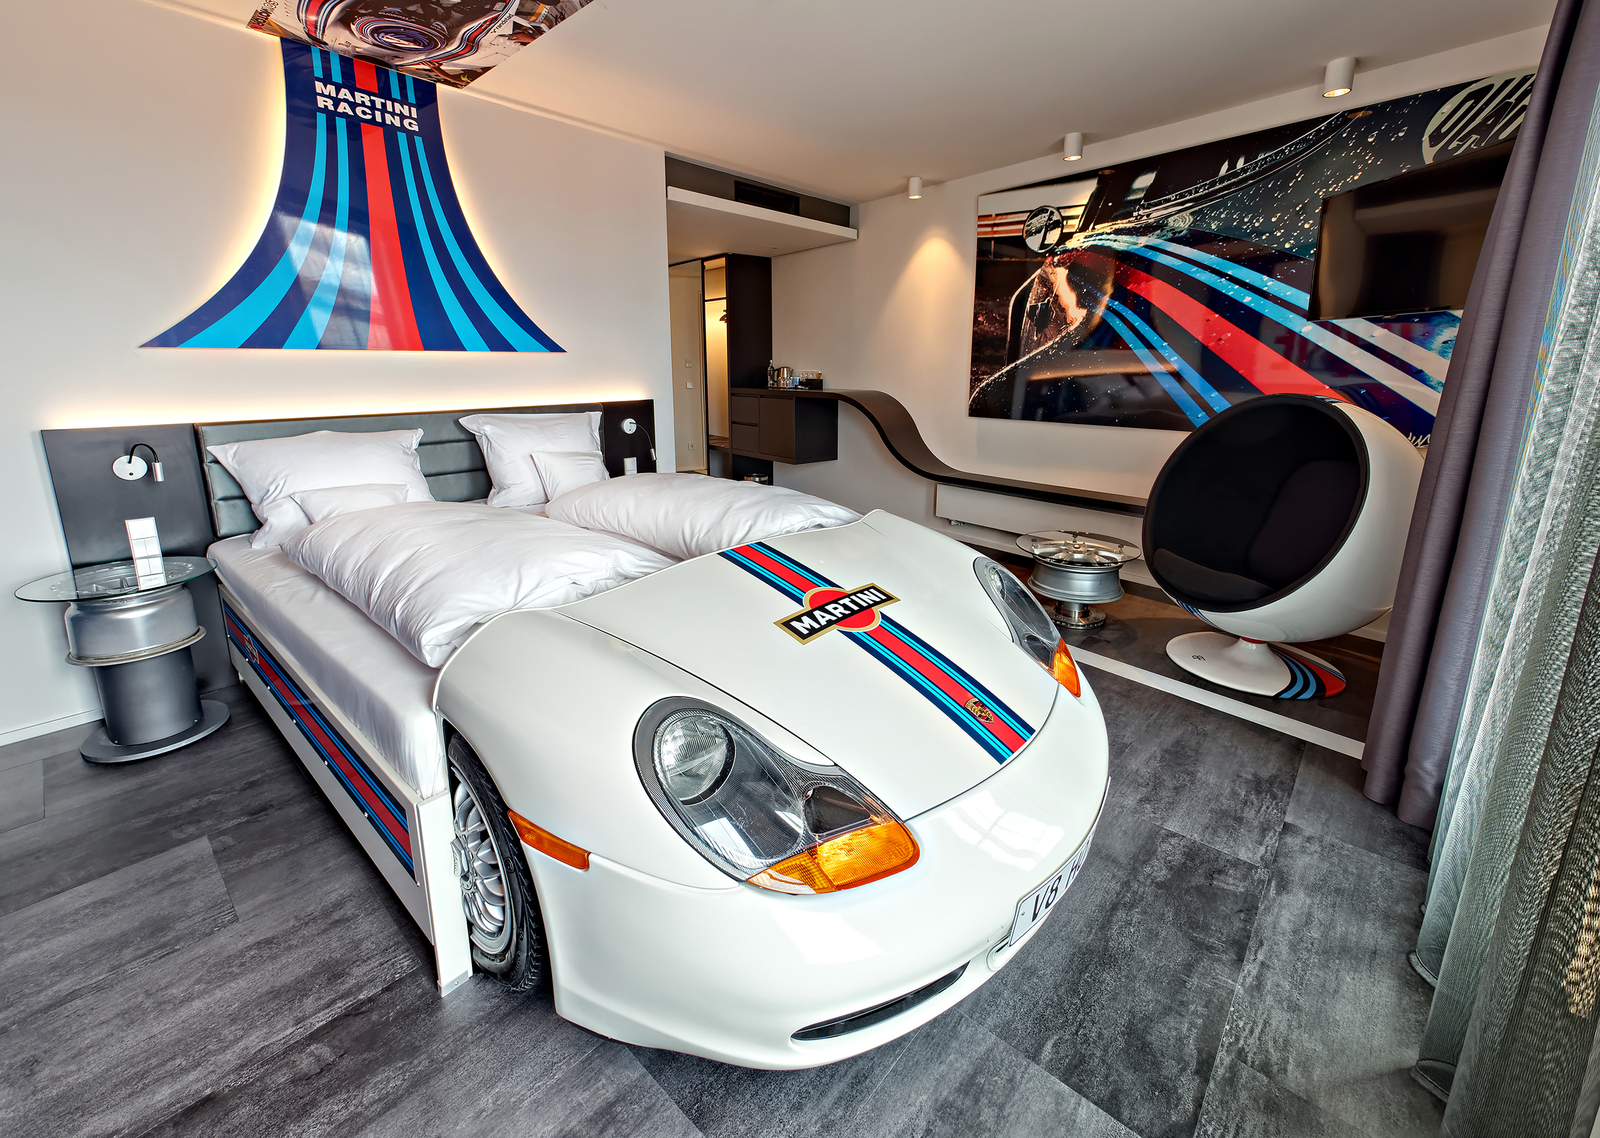 Autozimmer Petrol Heads mit weißem Autobett, Martini Racing Logos an den Wänden und dem Bett sowie ein großer Sessel.